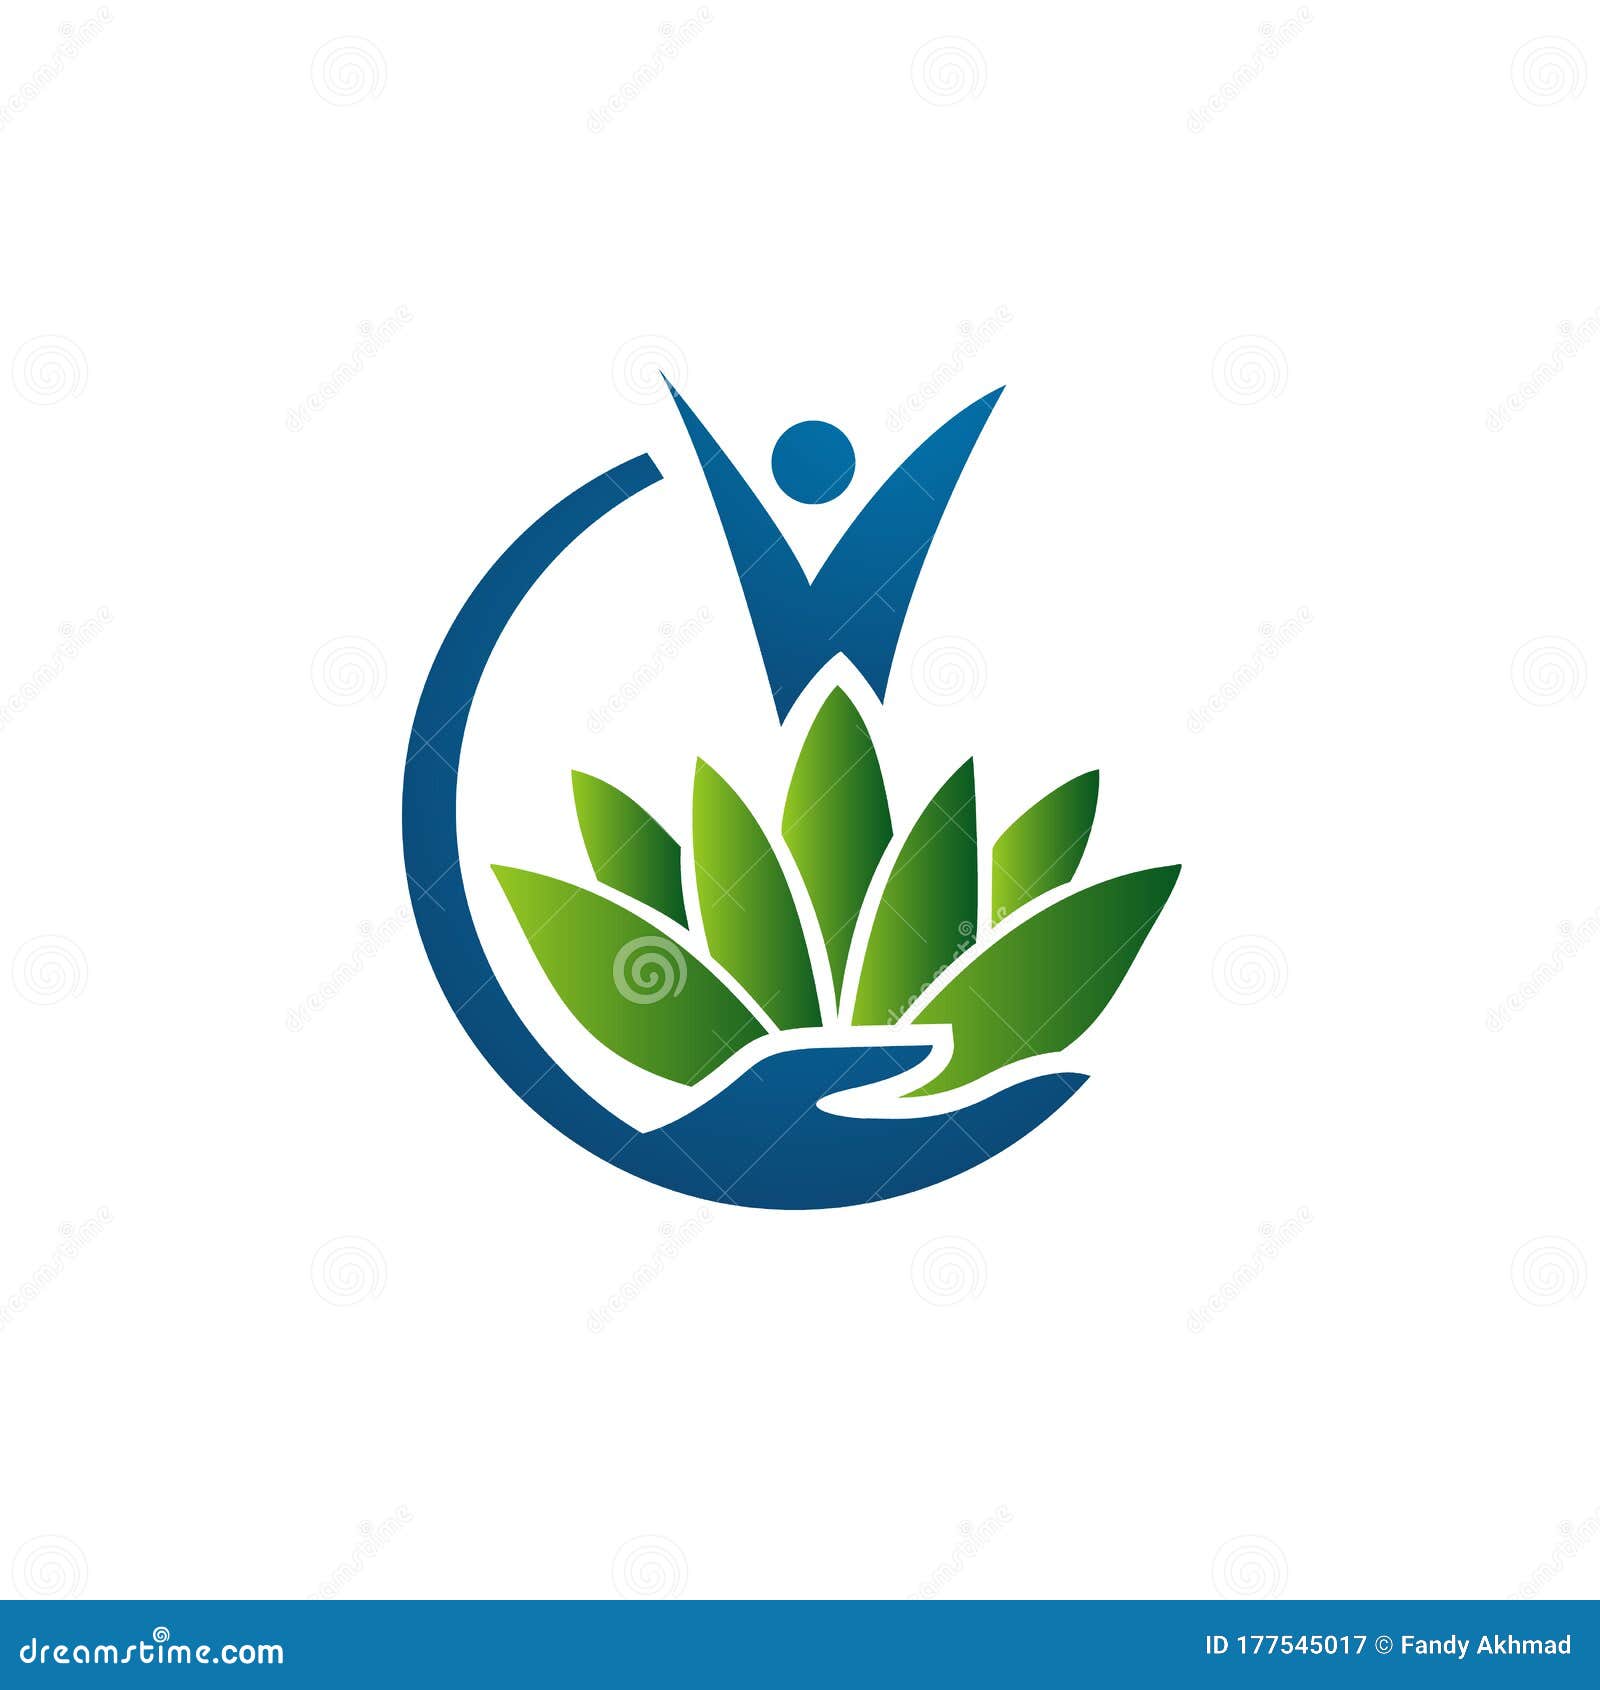 Holistic Logo Design